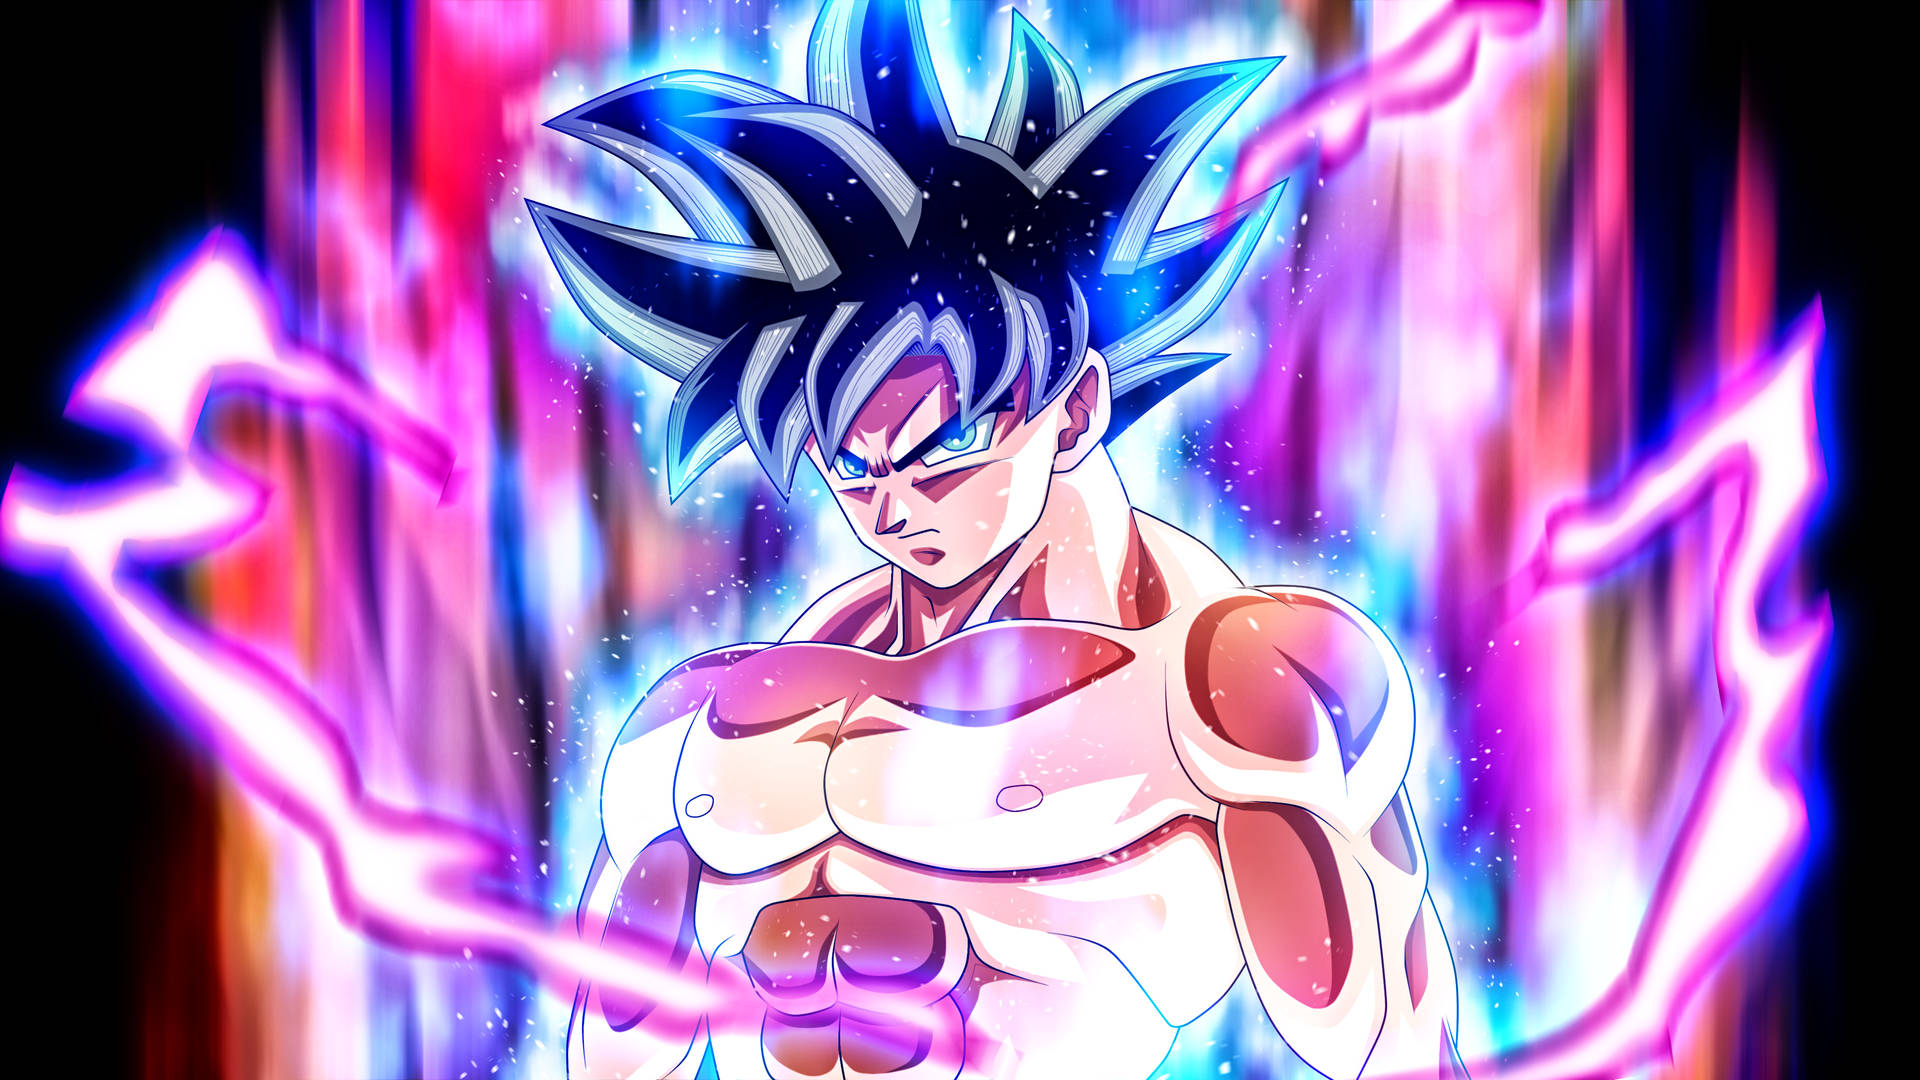 Goku 3802 X 2138 Background